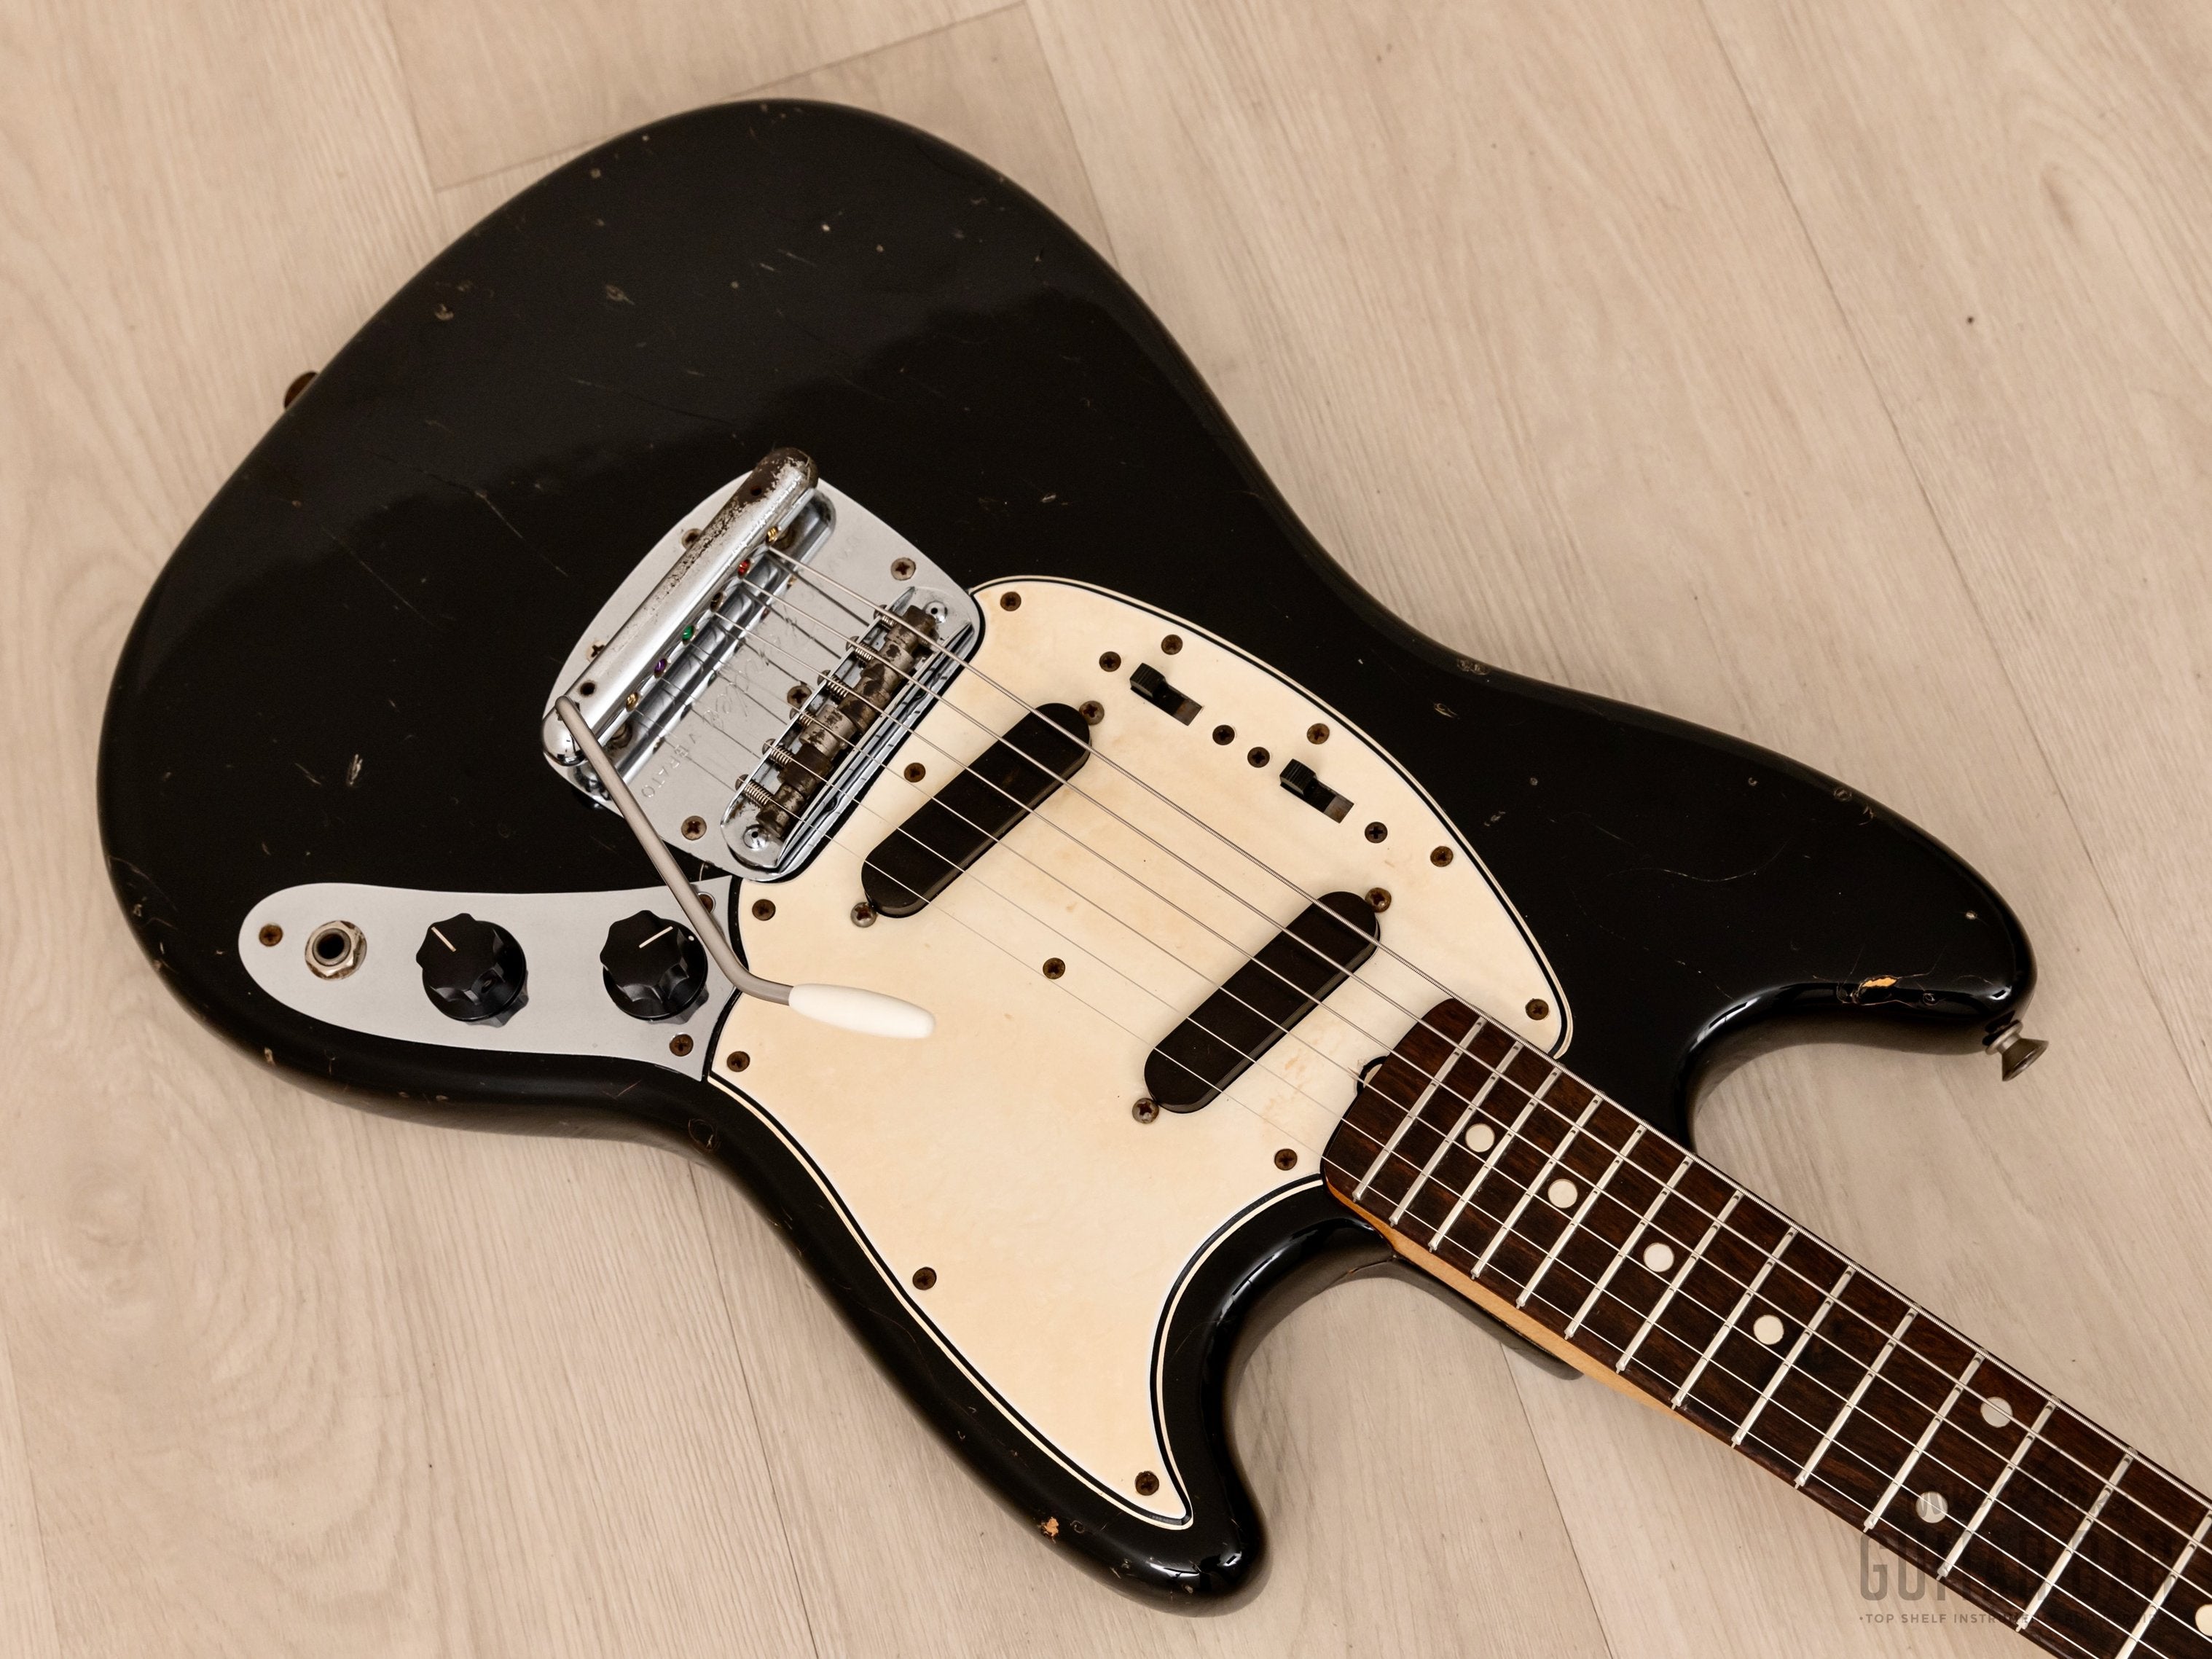 1965 Fender Mustang Vintage Offset Electric Guitar Black w/ Case